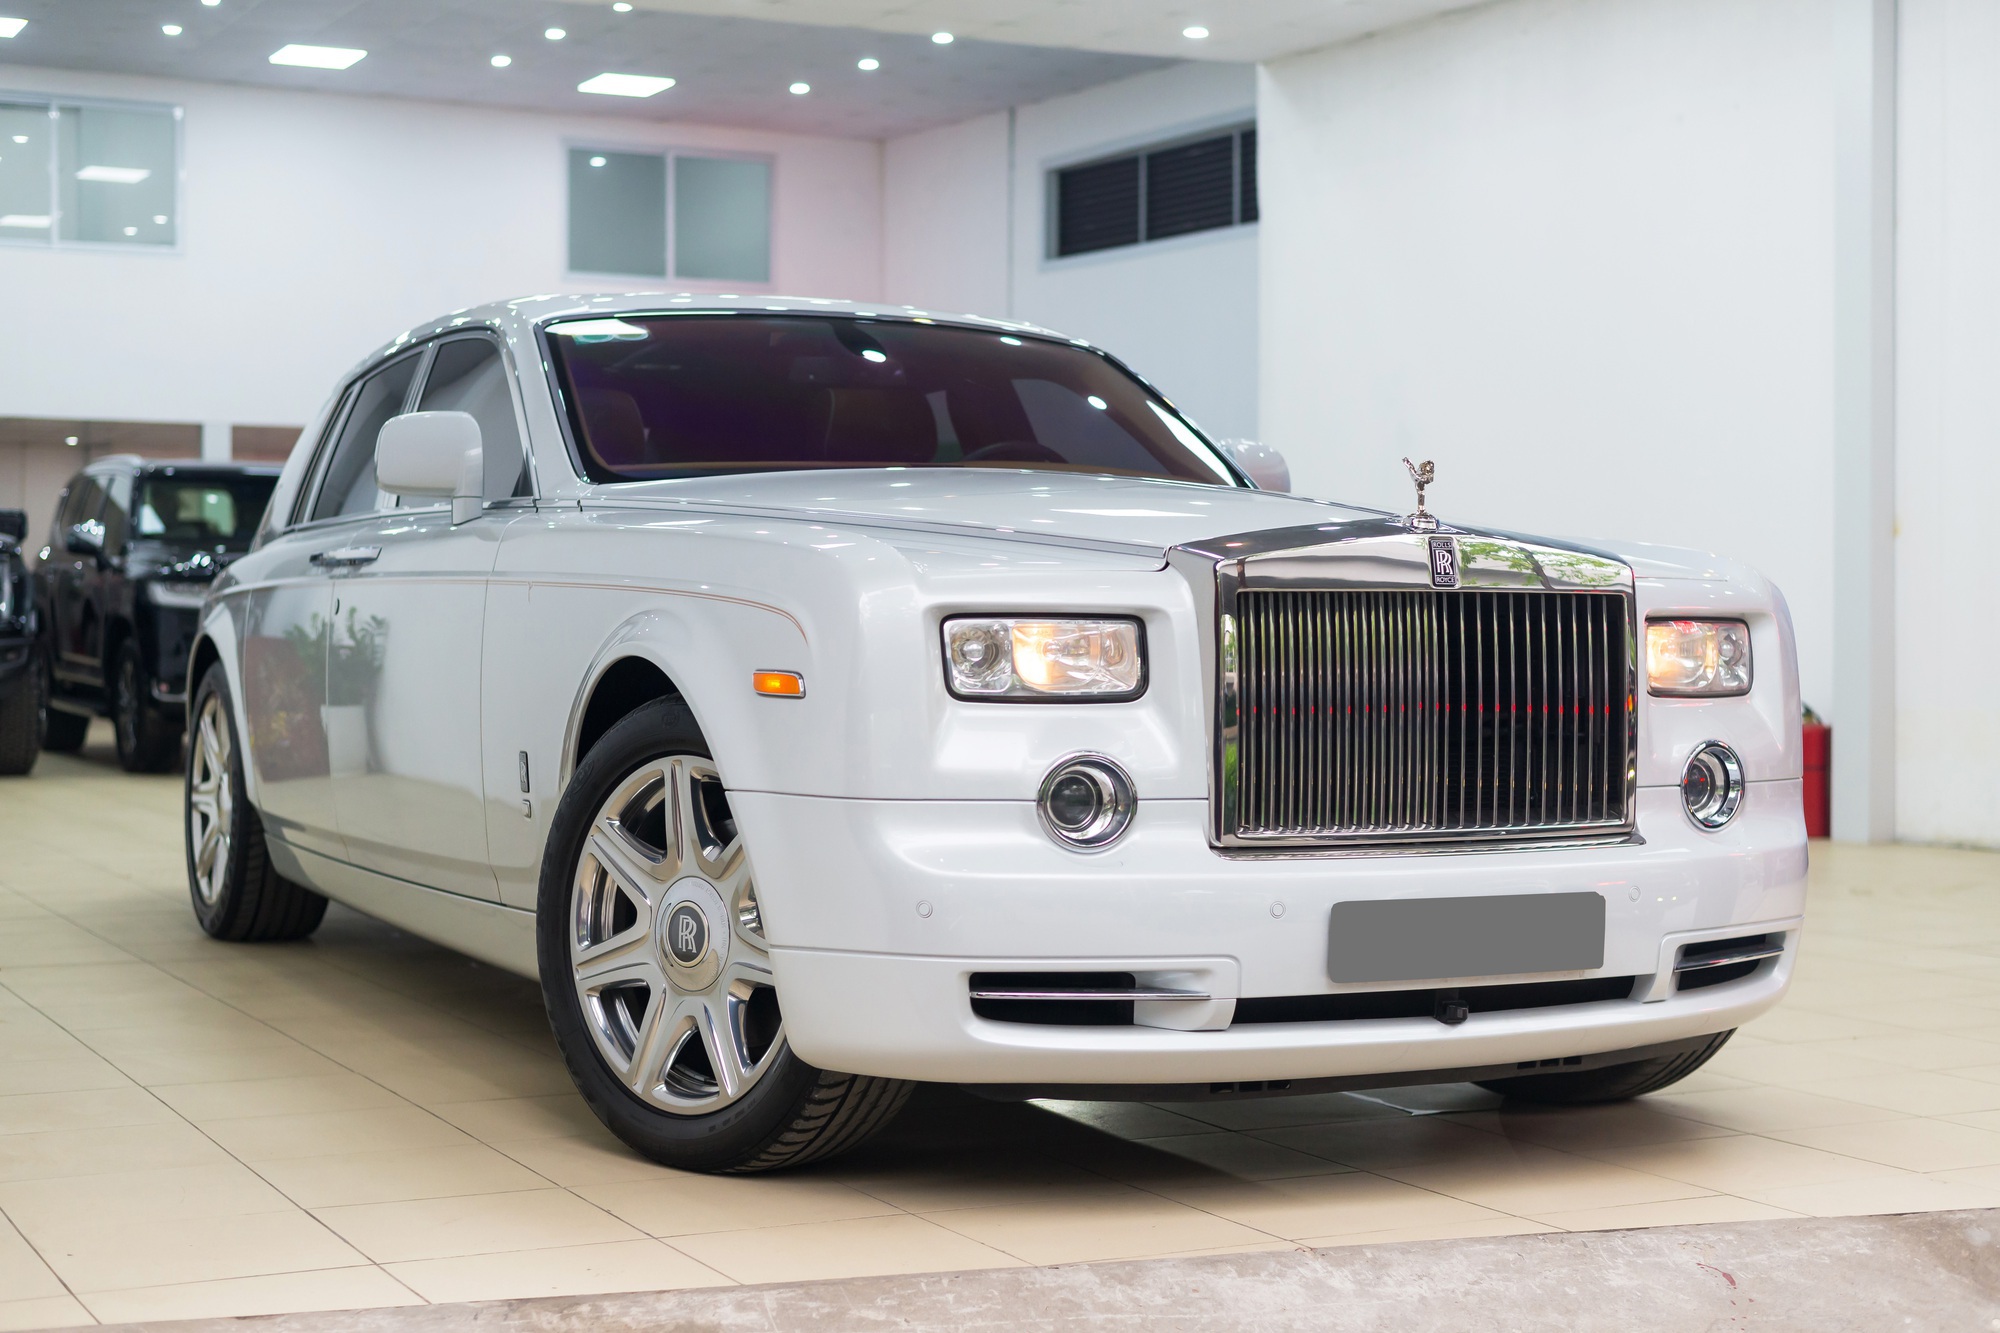 Vì quá đặc biệt, chiếc Rolls-Royce Phantom này được định giá 20 tỷ dù đã chạy 41.000km